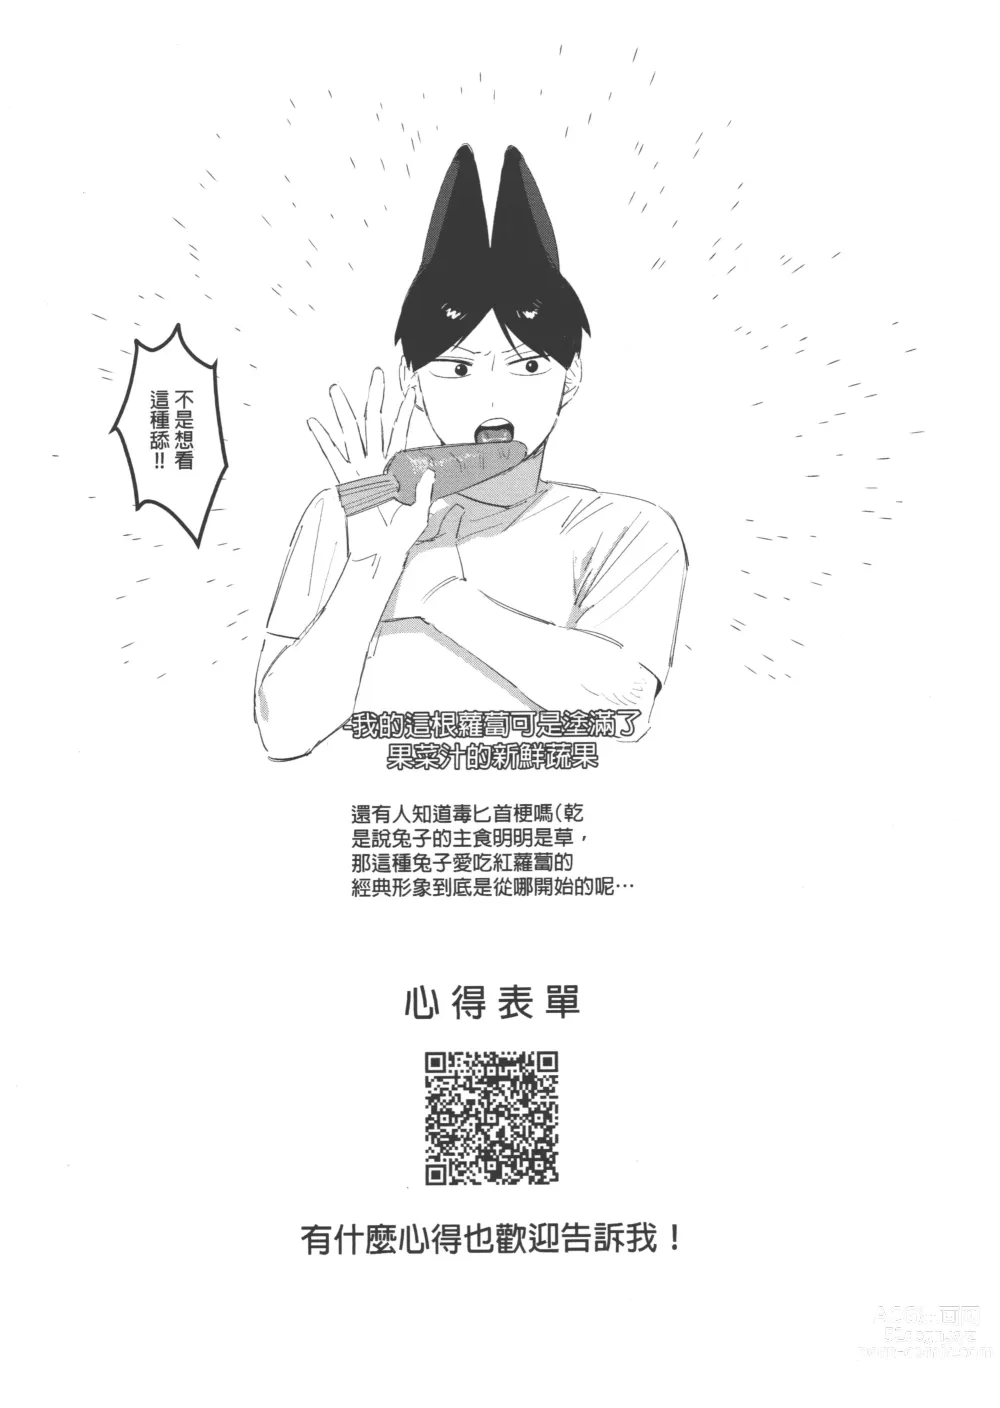 Page 30 of doujinshi 影山飛雄變成兔子了!